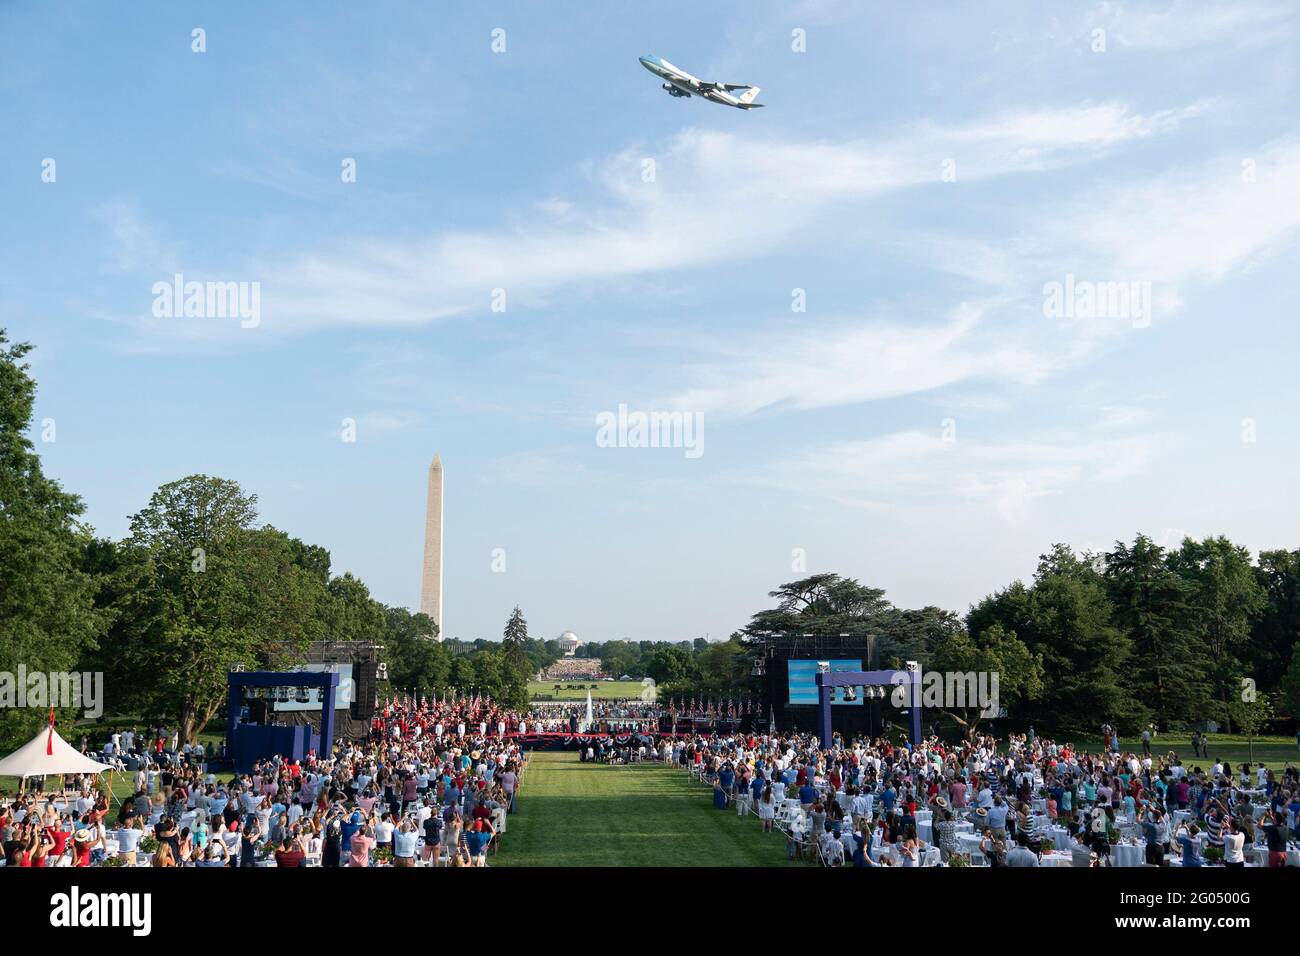 Air Force One fliegt am Samstagabend, dem 4. Juli 2020, während des Salute to America 2020, dem 4. Juli, bei der Feier des Weißen Hauses über dem Weißen Haus Stockfoto